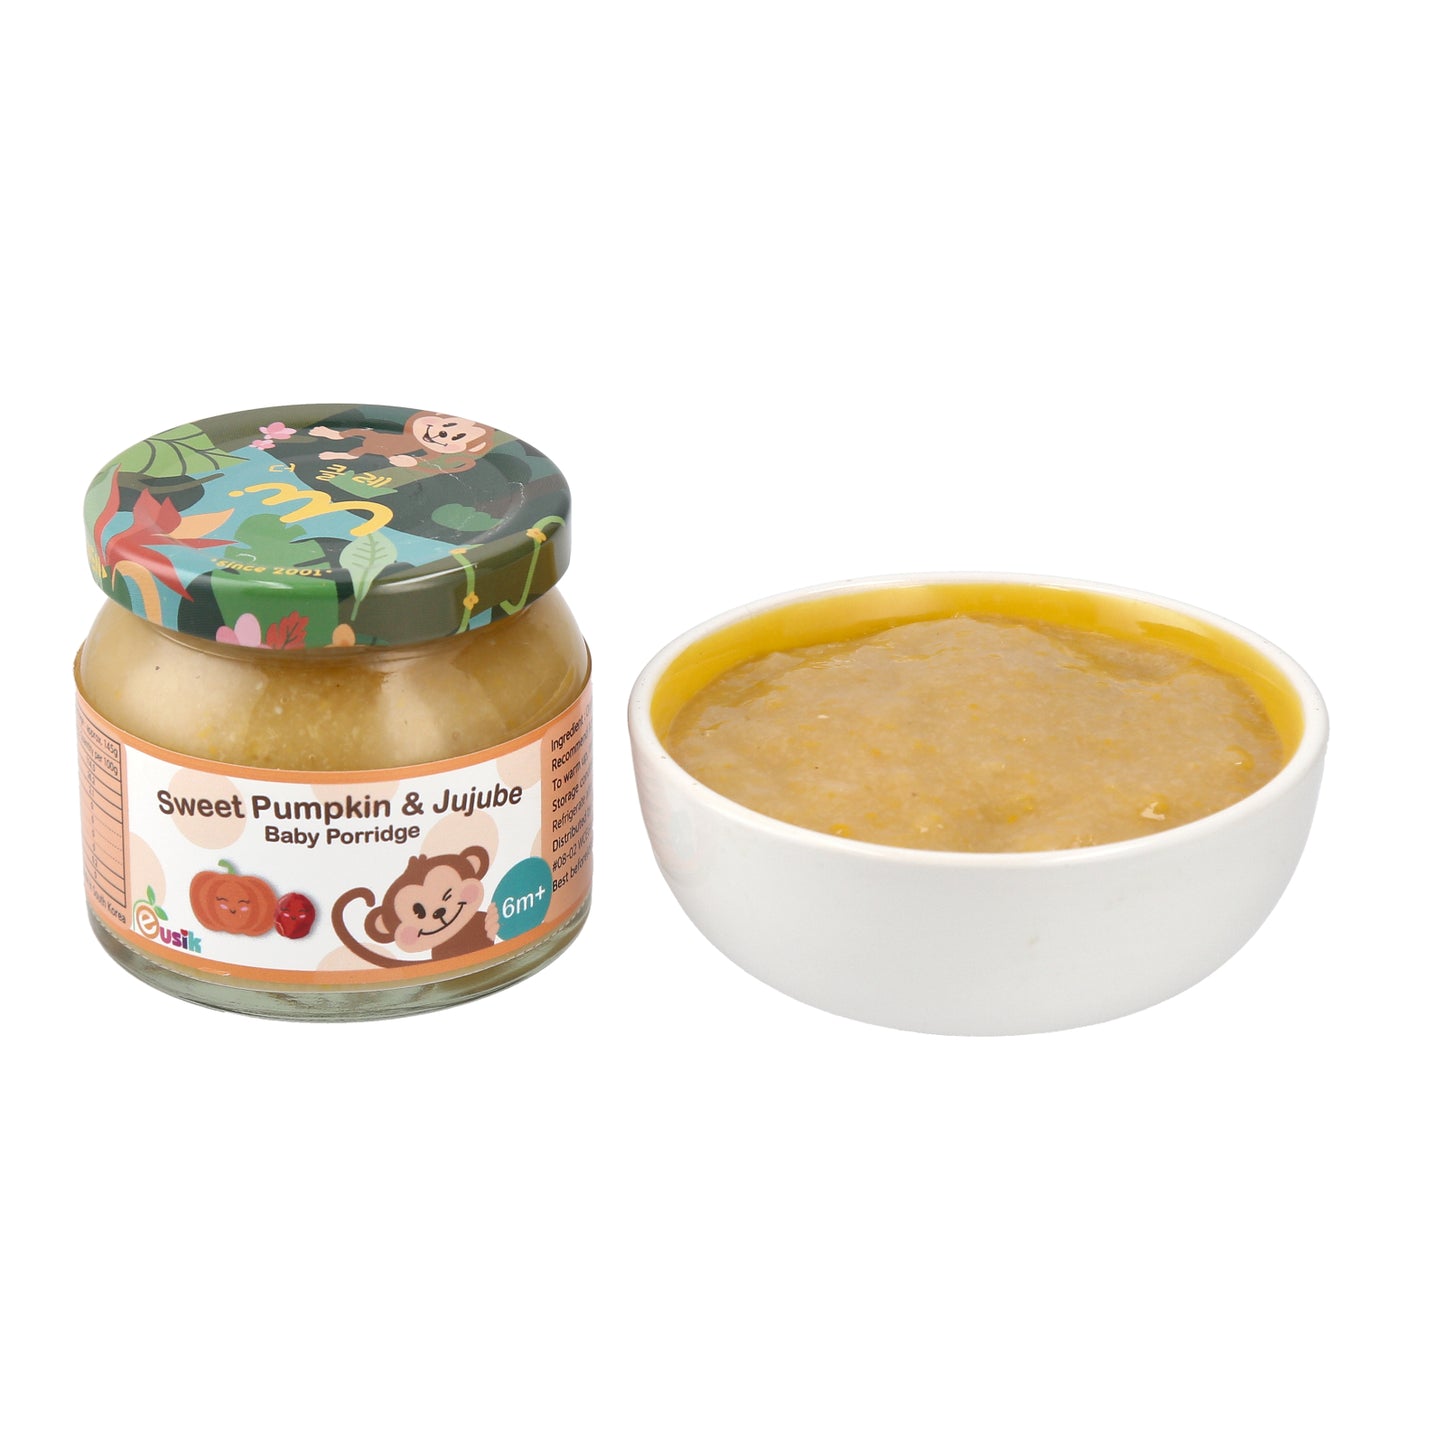 Eusik  - Baby Rice Porridge (Sweet Pumpkin & Jujube) 145g, 6mths+